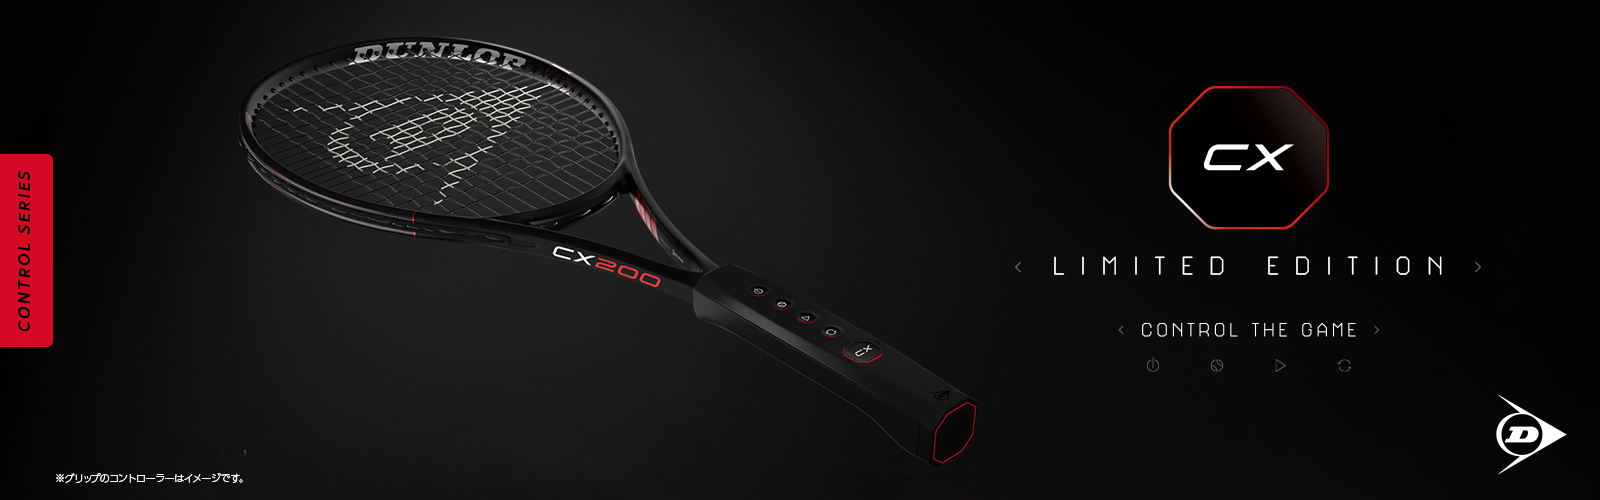 ダンロップテニスラケット「CX LIMITED EDITION」を数量限定で新発売 